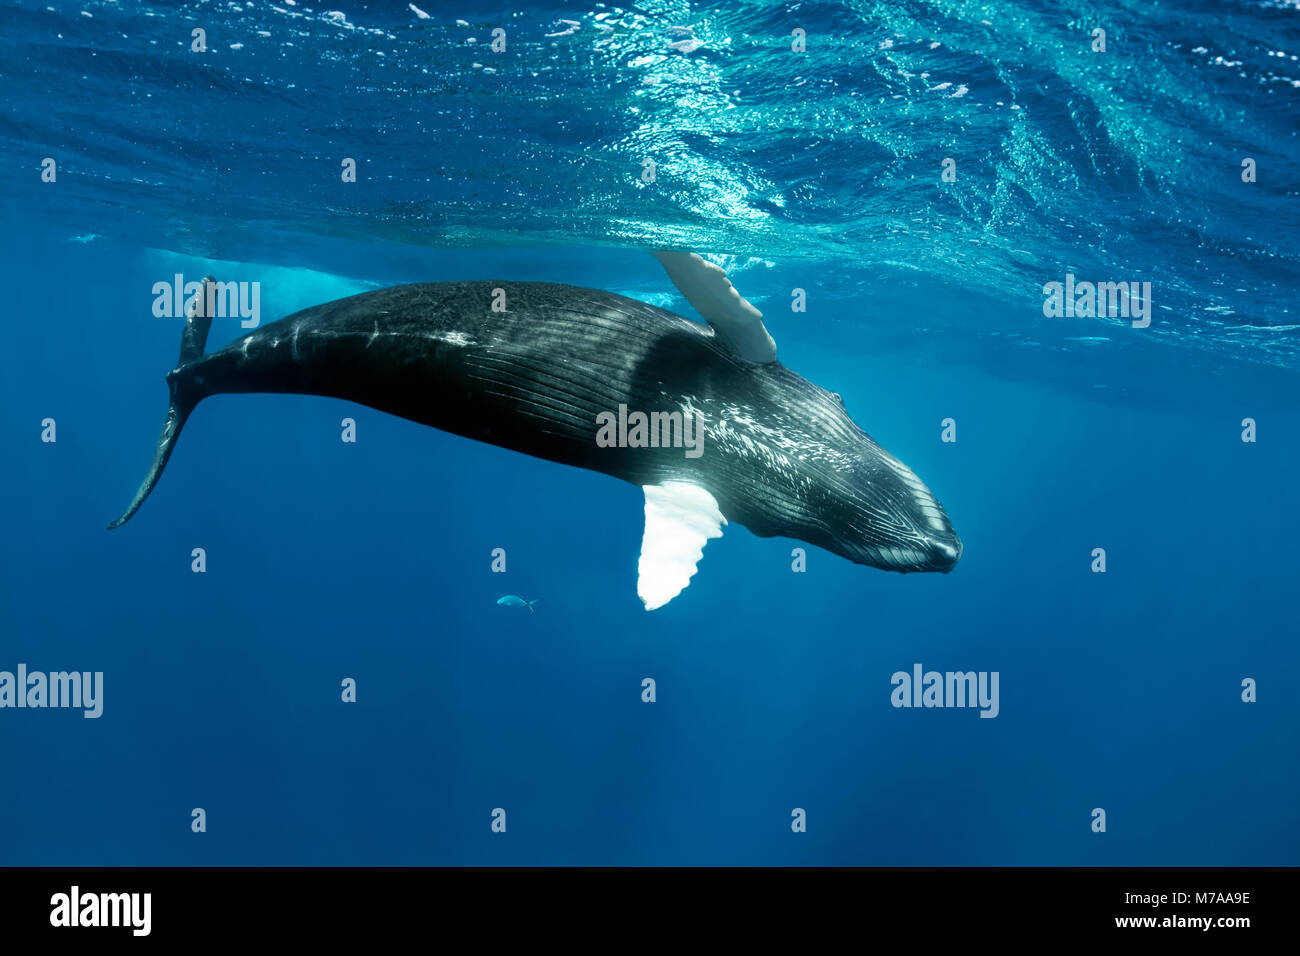 La ballena jorobada (Megaptera novaeangliae), juguetona cerca de la superficie del mar, océano Pacífico, Rurutu, Polinesia Francesa Foto de stock